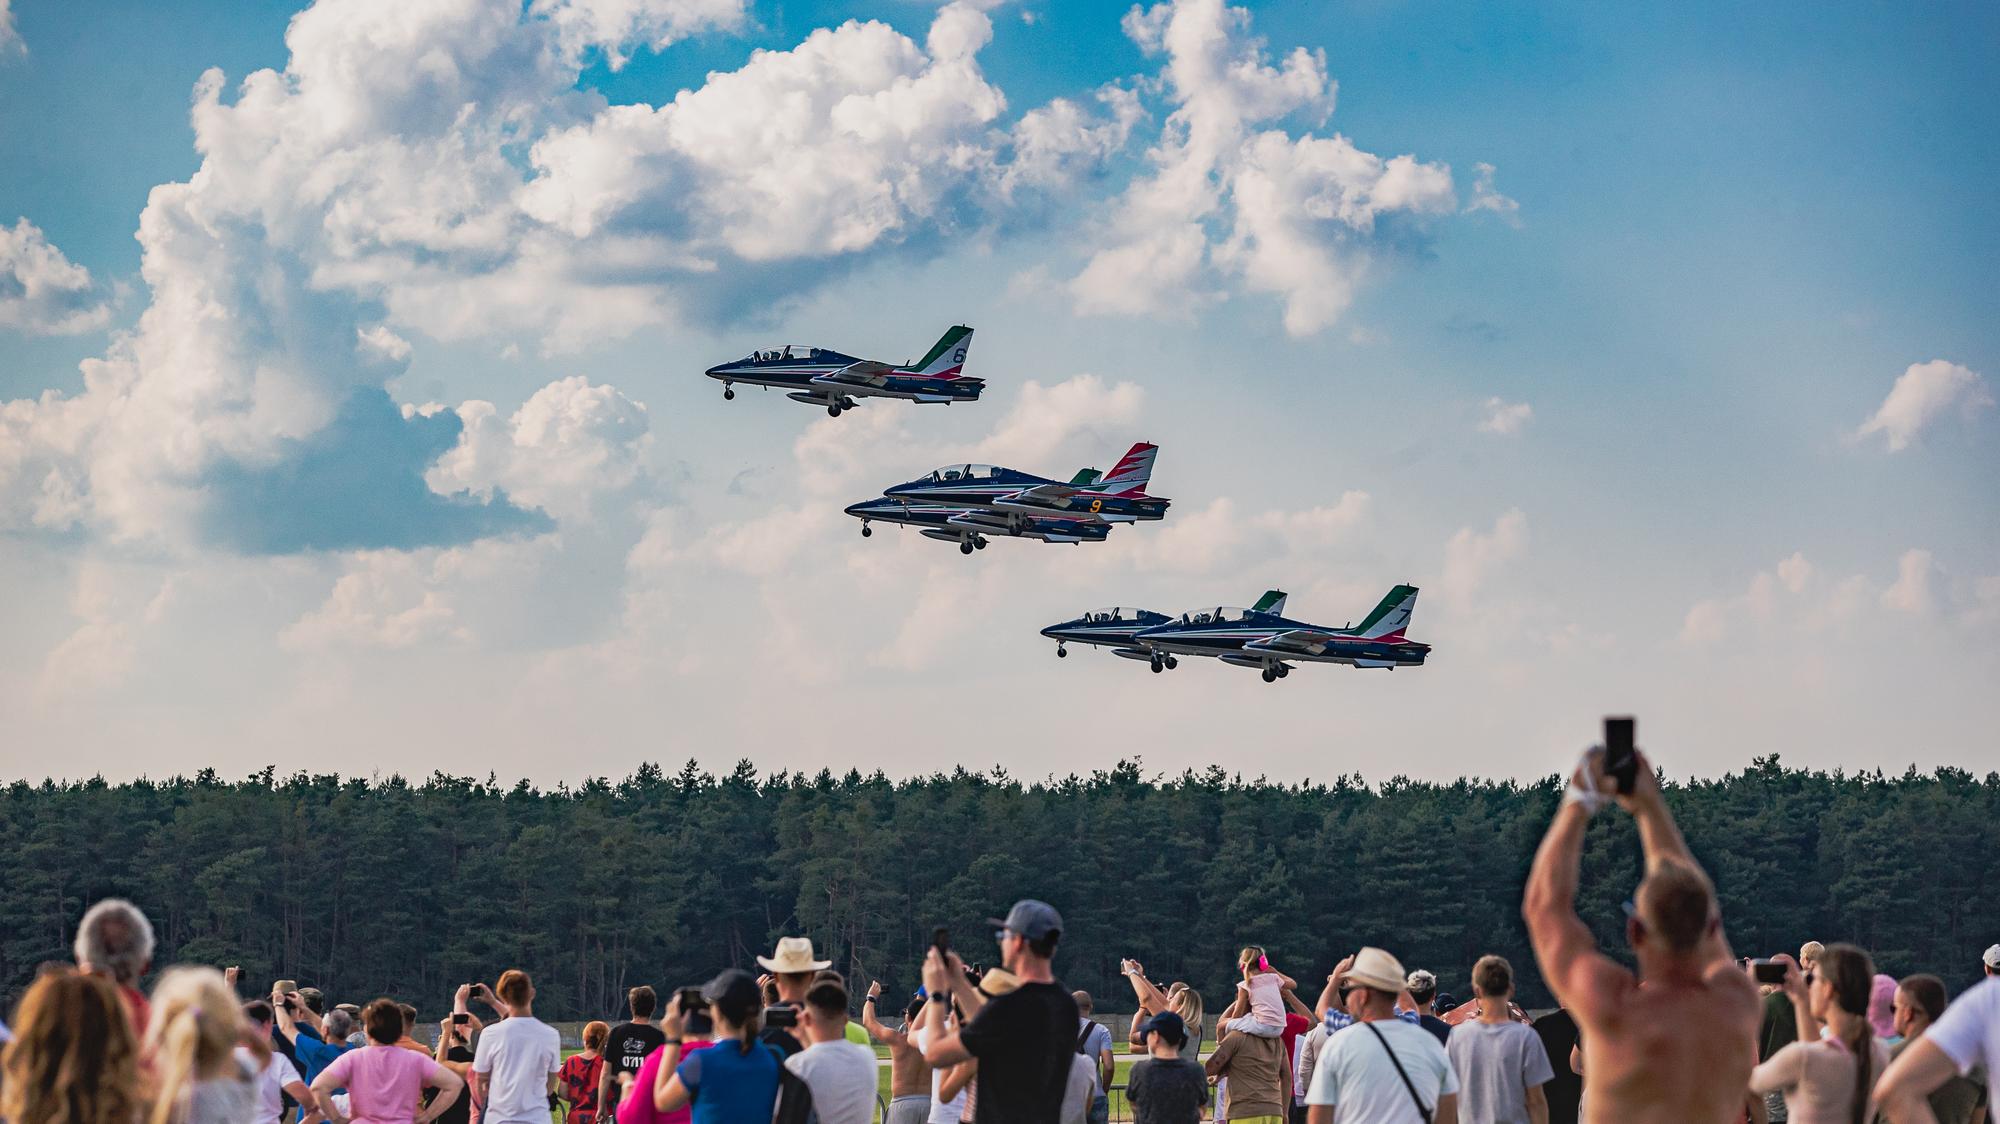 Non seulement le ciel de Piešťany brillera: la joie et le plaisir seront transportés tout au long du Festival de l’Aviation